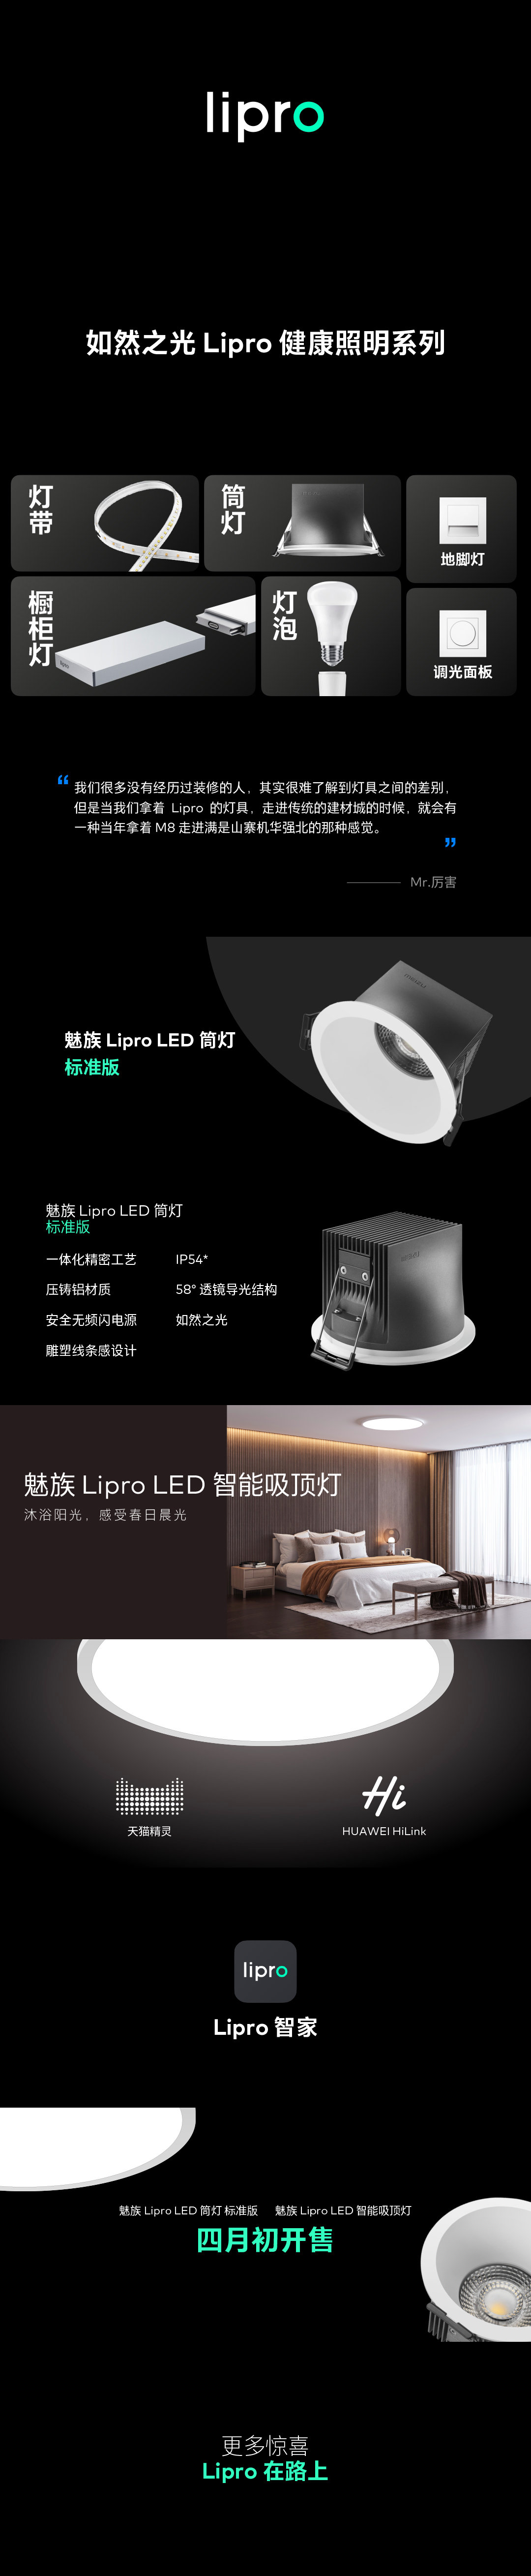 魅族 Lipro LED筒灯标准版和智能吸顶灯将于四月初开售